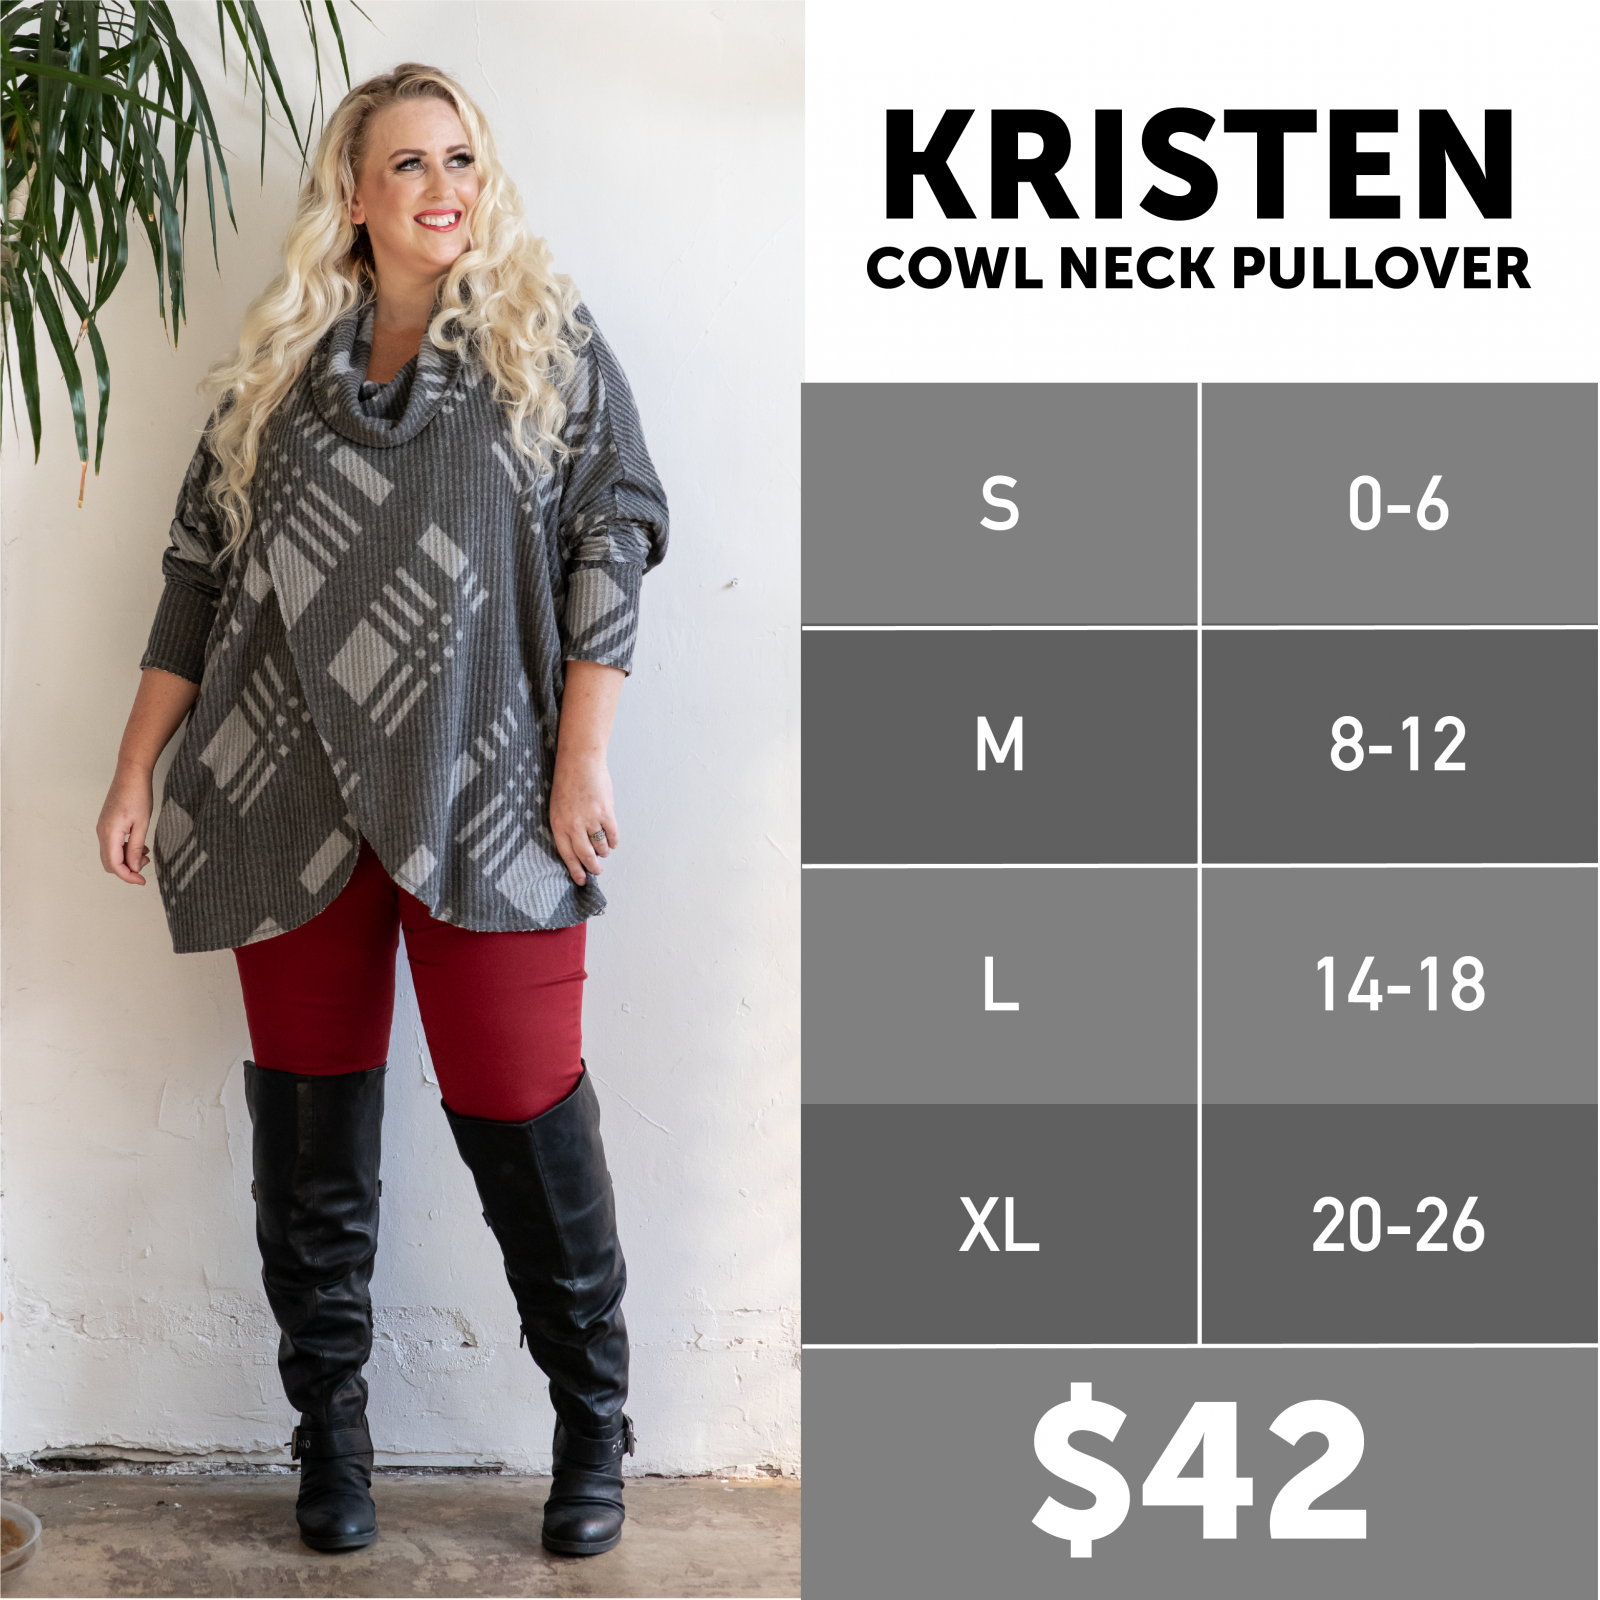 Lularoe Kristen Sweater Size Chart